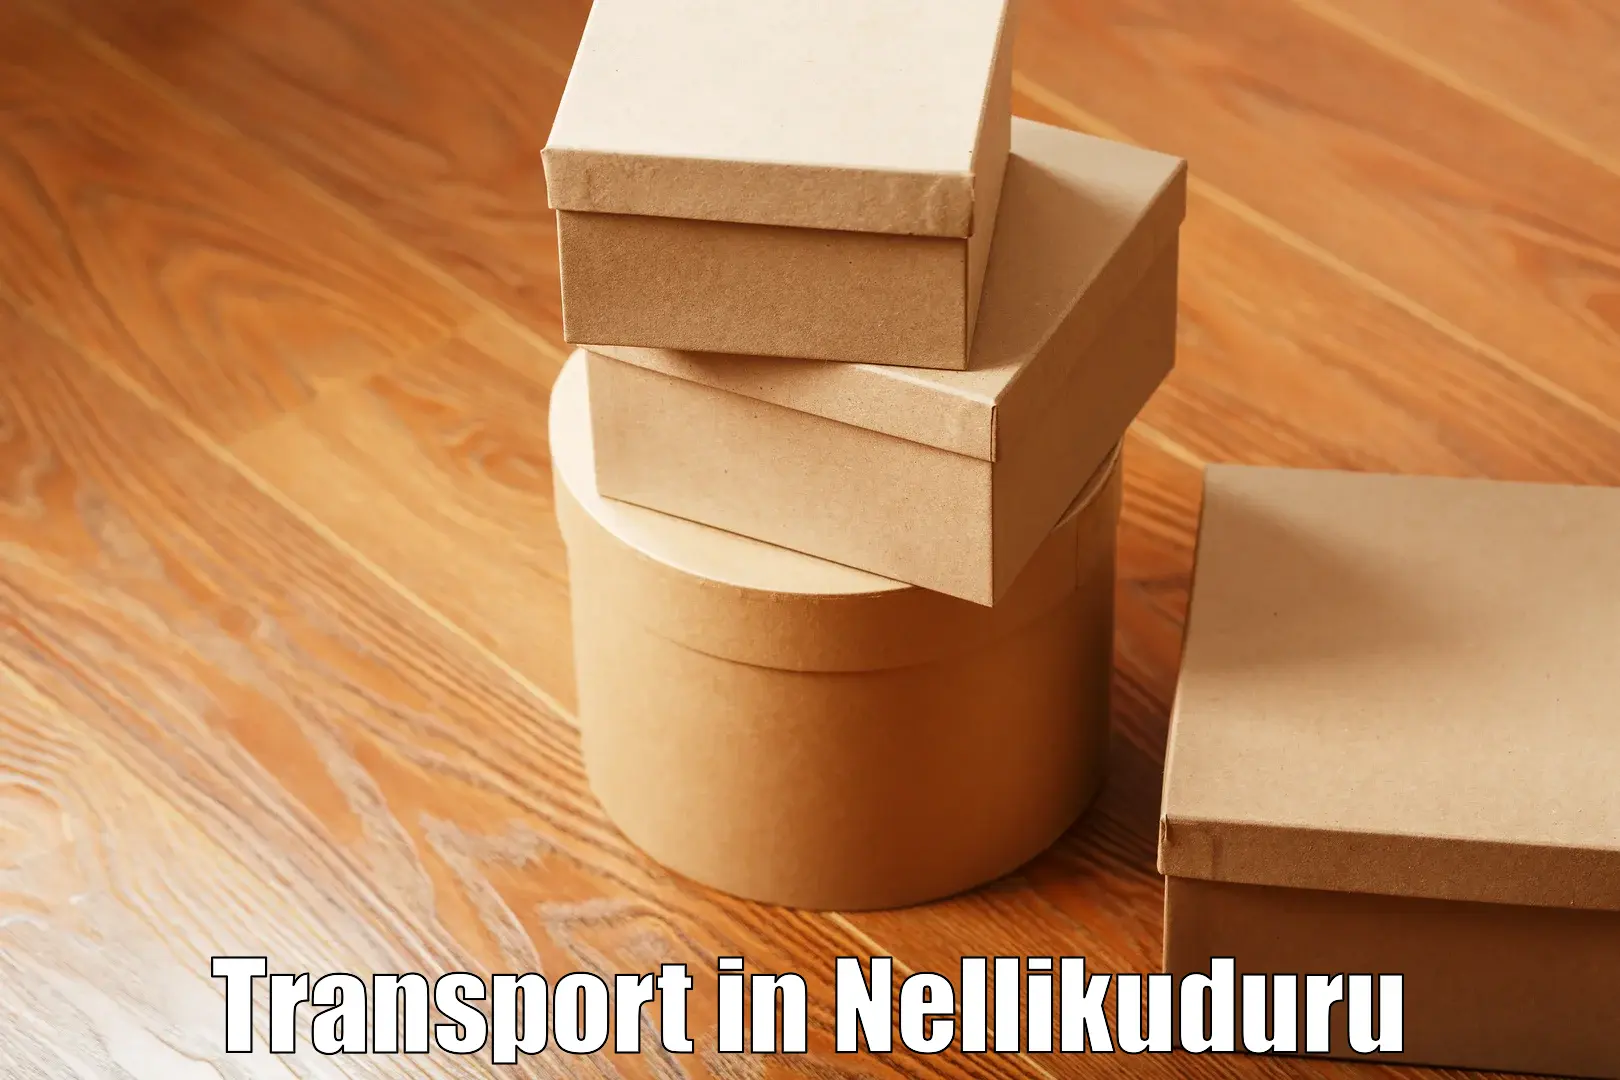 Road transport online services in Nellikuduru